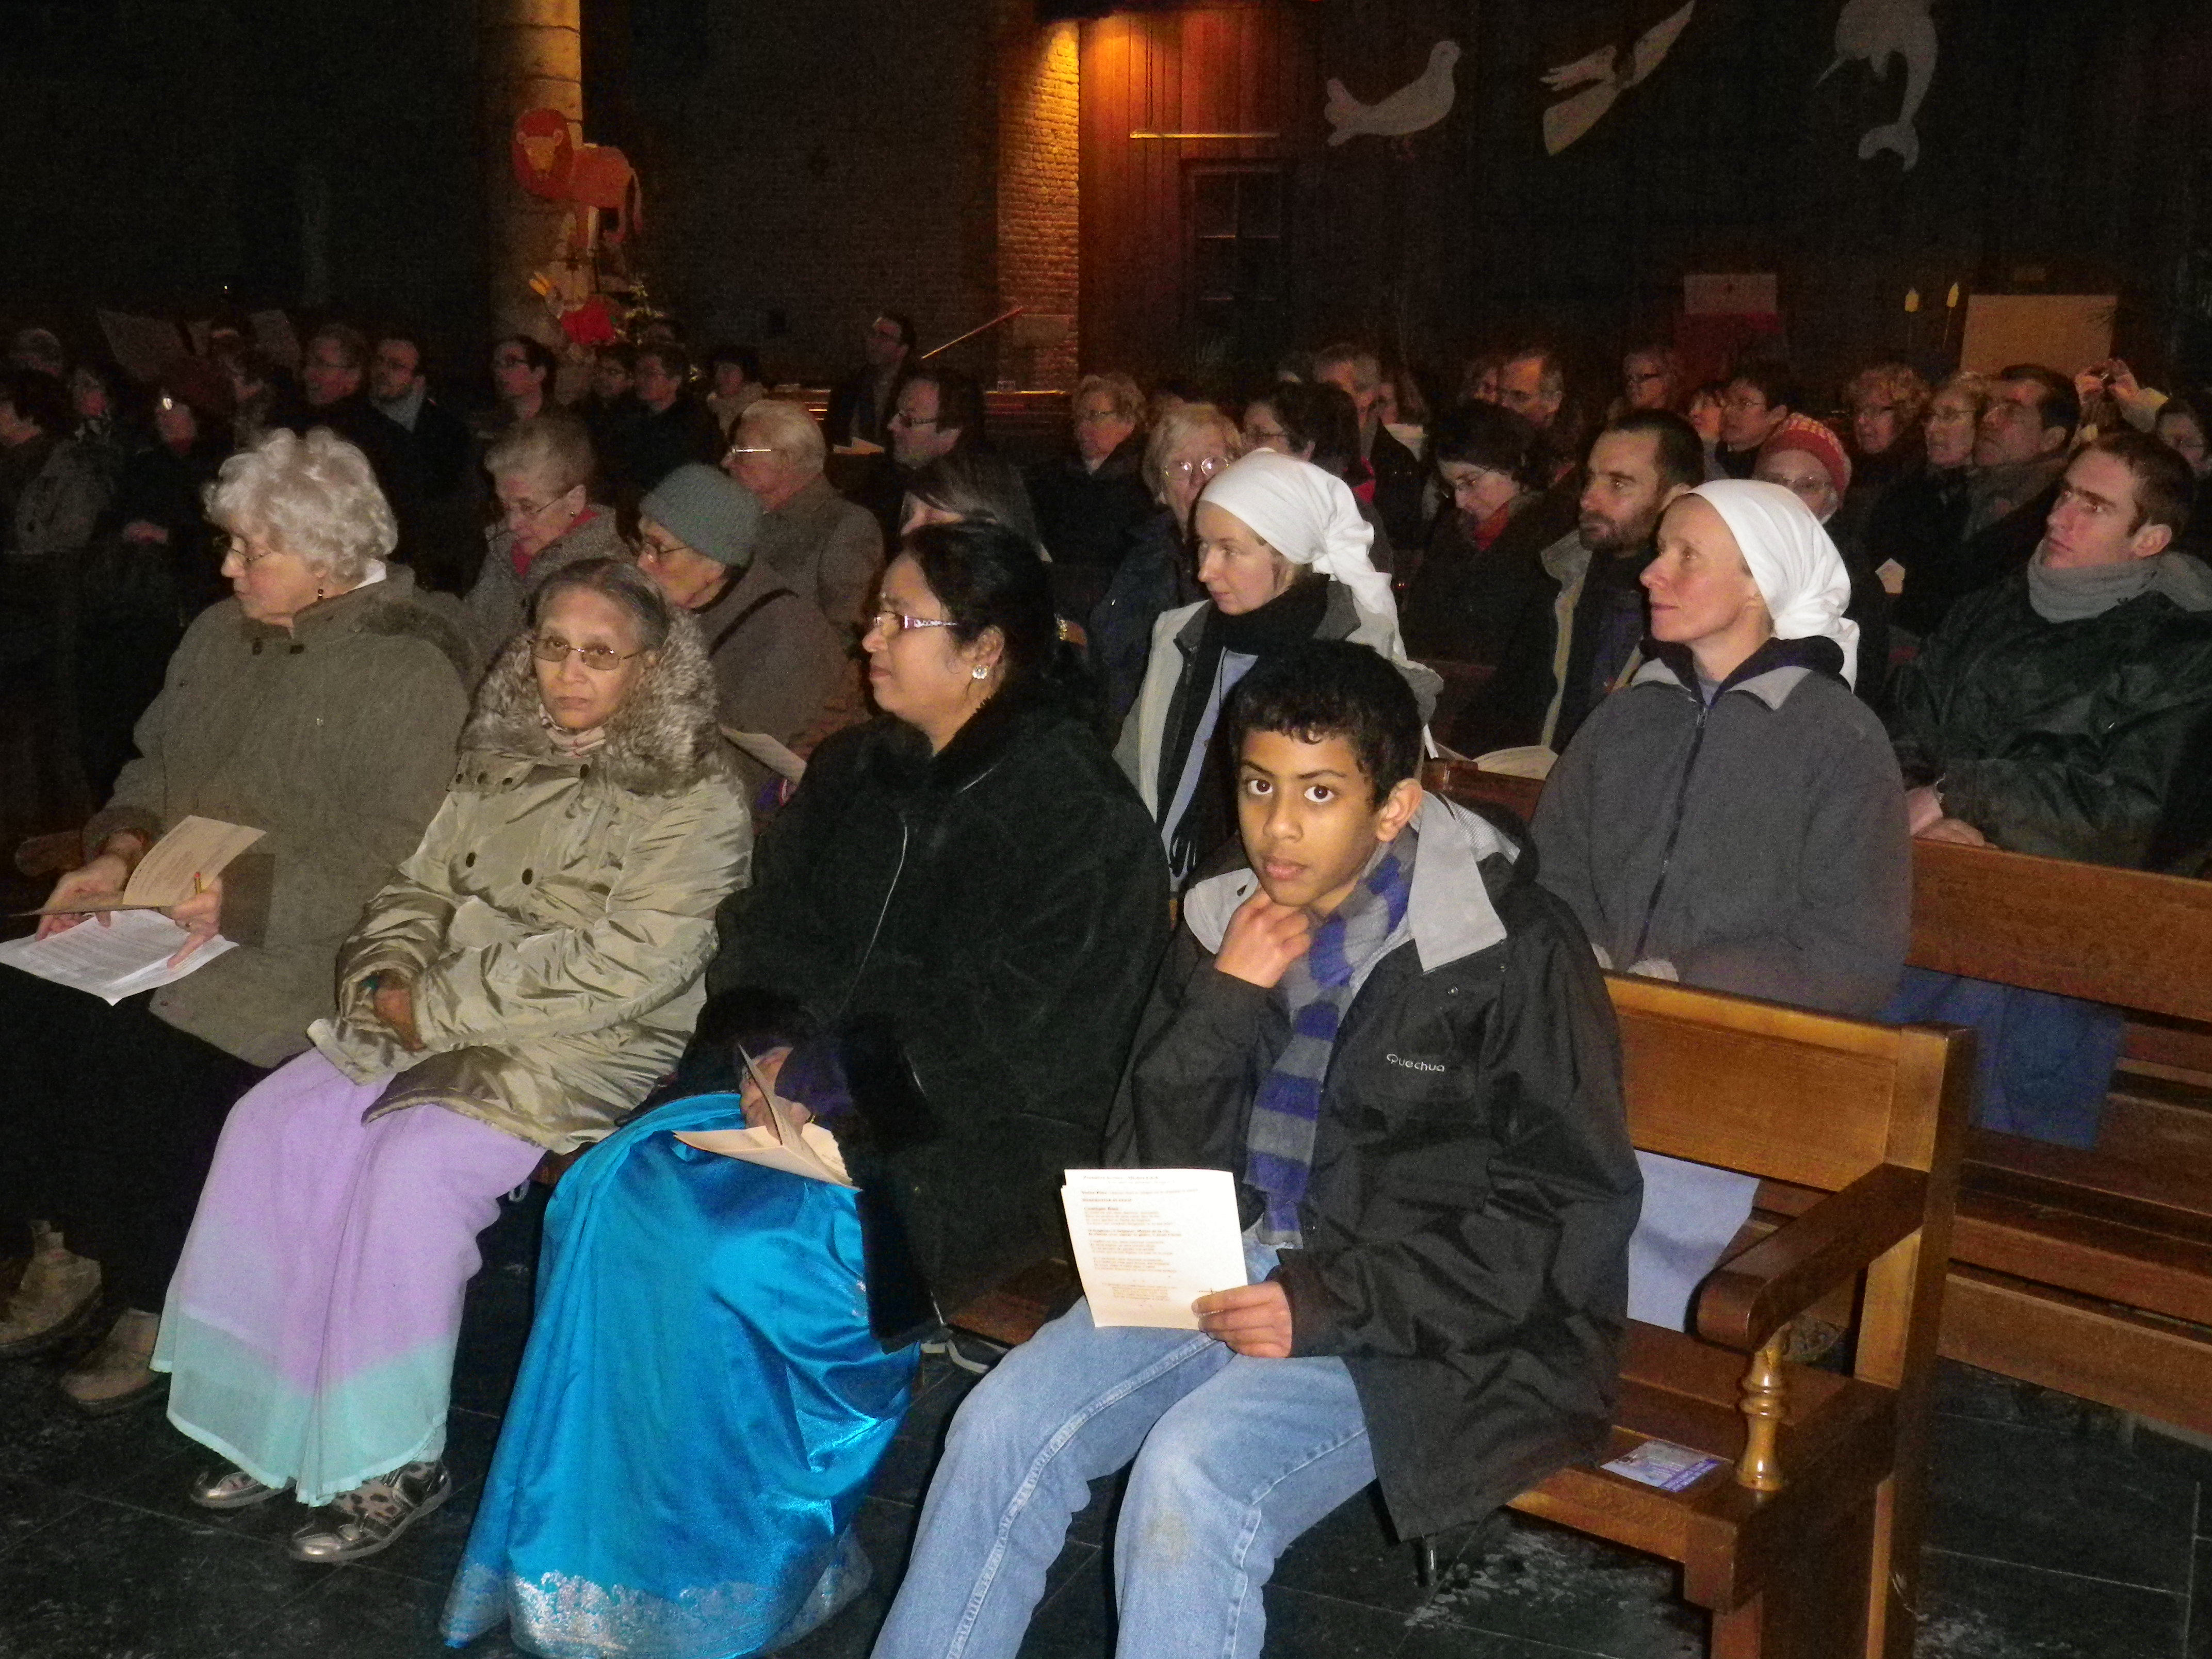 La présence d'Indiens rappelle que les chrétiens d'Inde ont préparé la semaine mondiale œcuménique 2013.